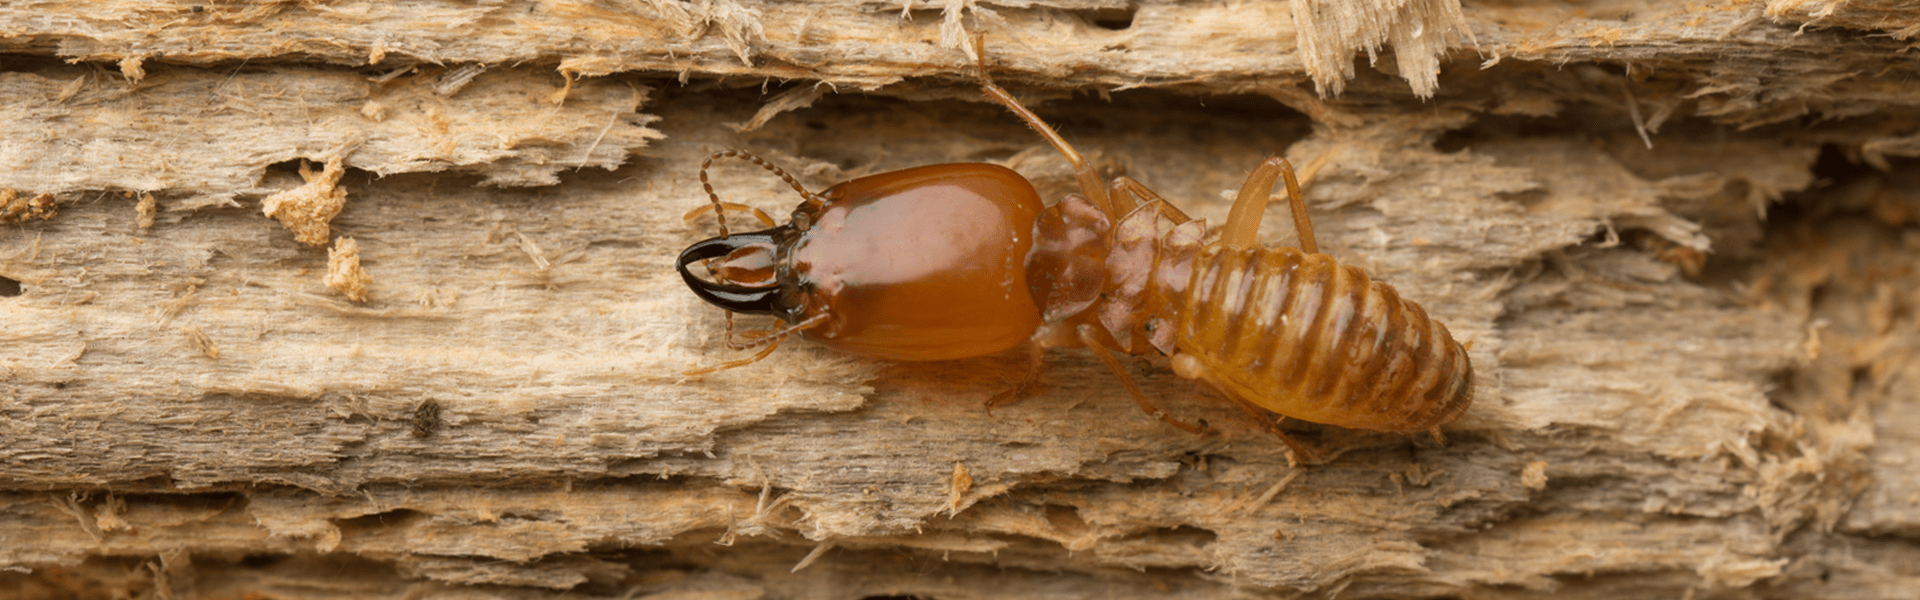 termite consuming wood